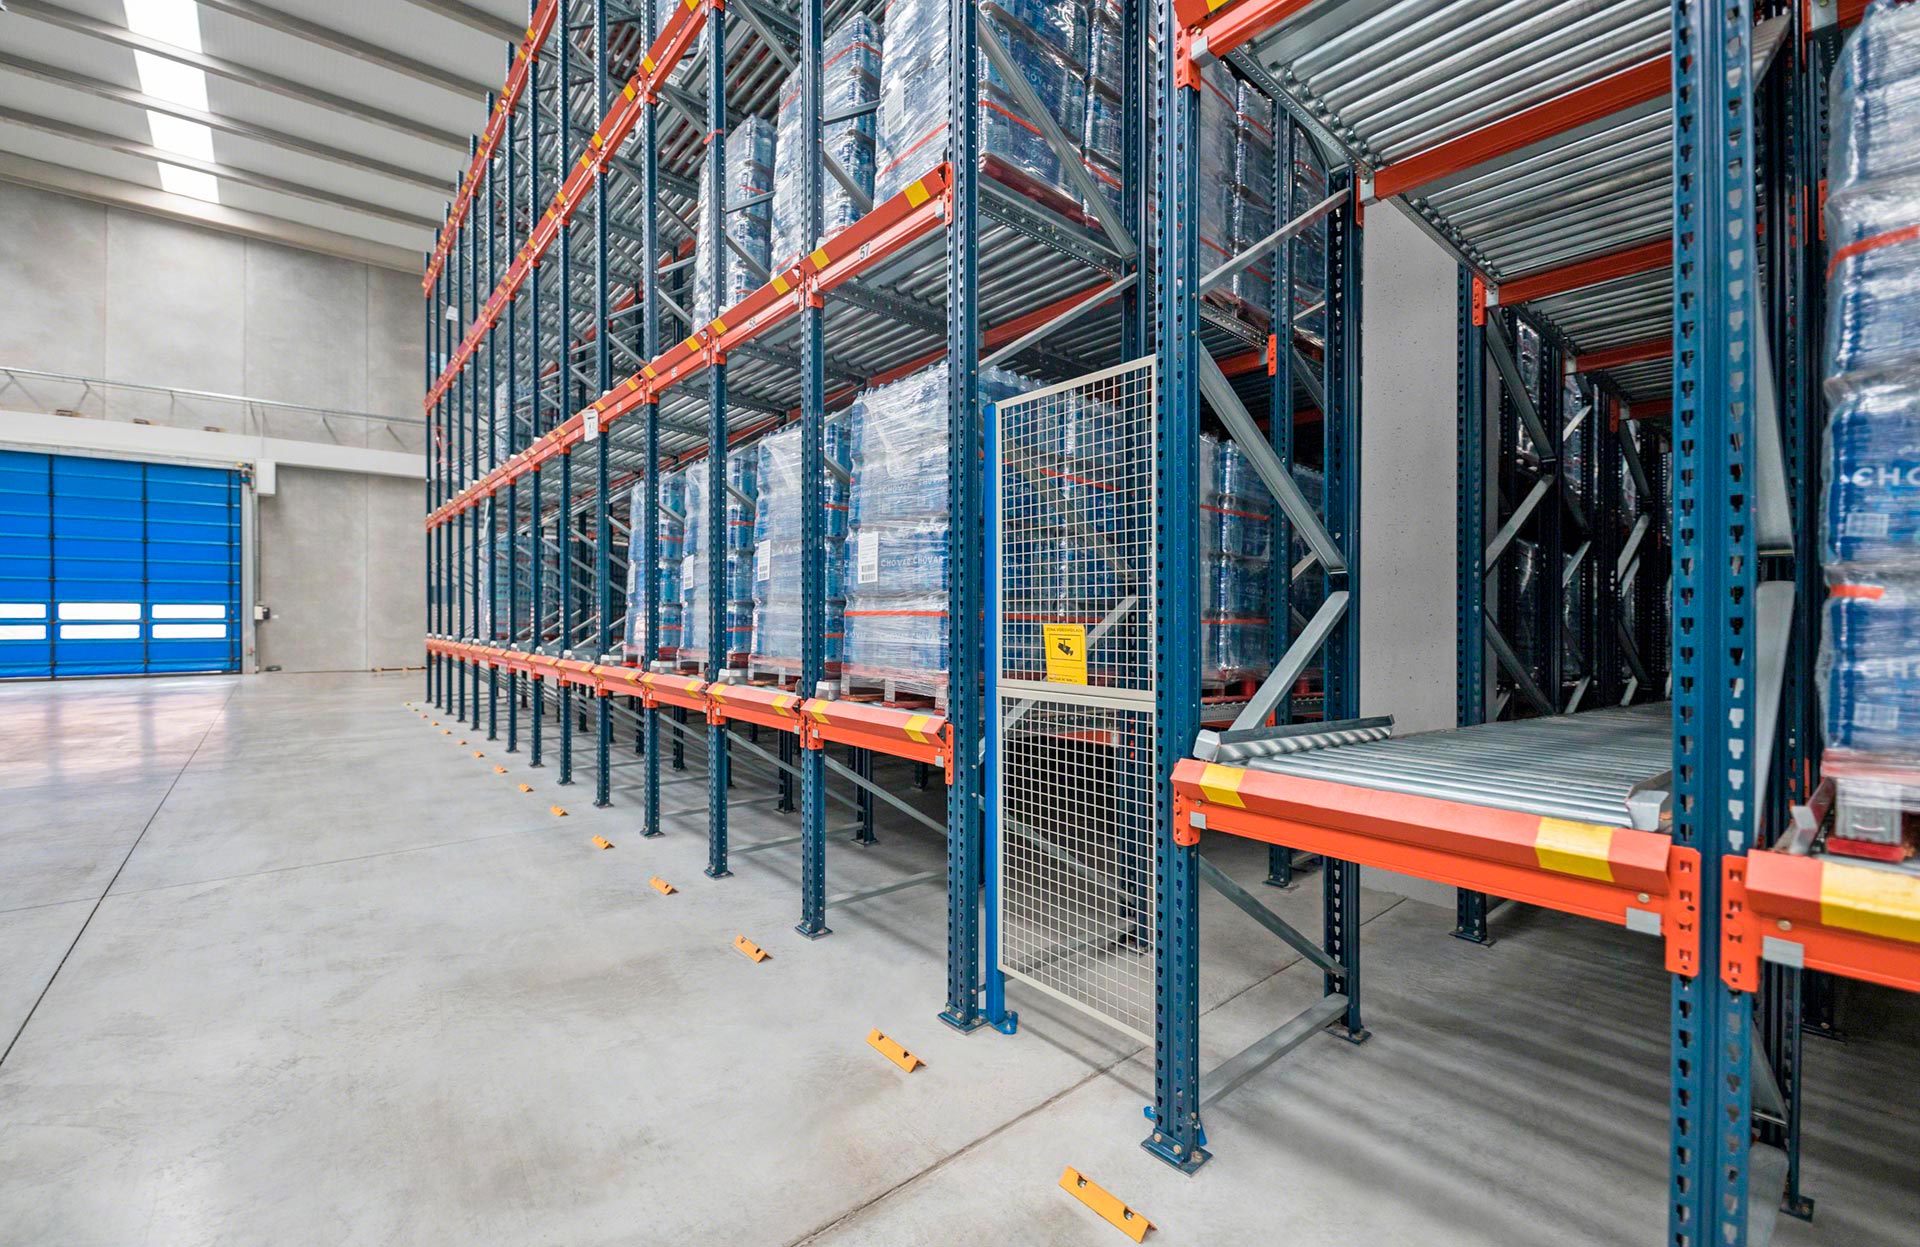 Na estrutura de armazenagem dinâmica podem ser disponibilizadas passagens de segurança para realizar consertos ou tarefas de manutenção